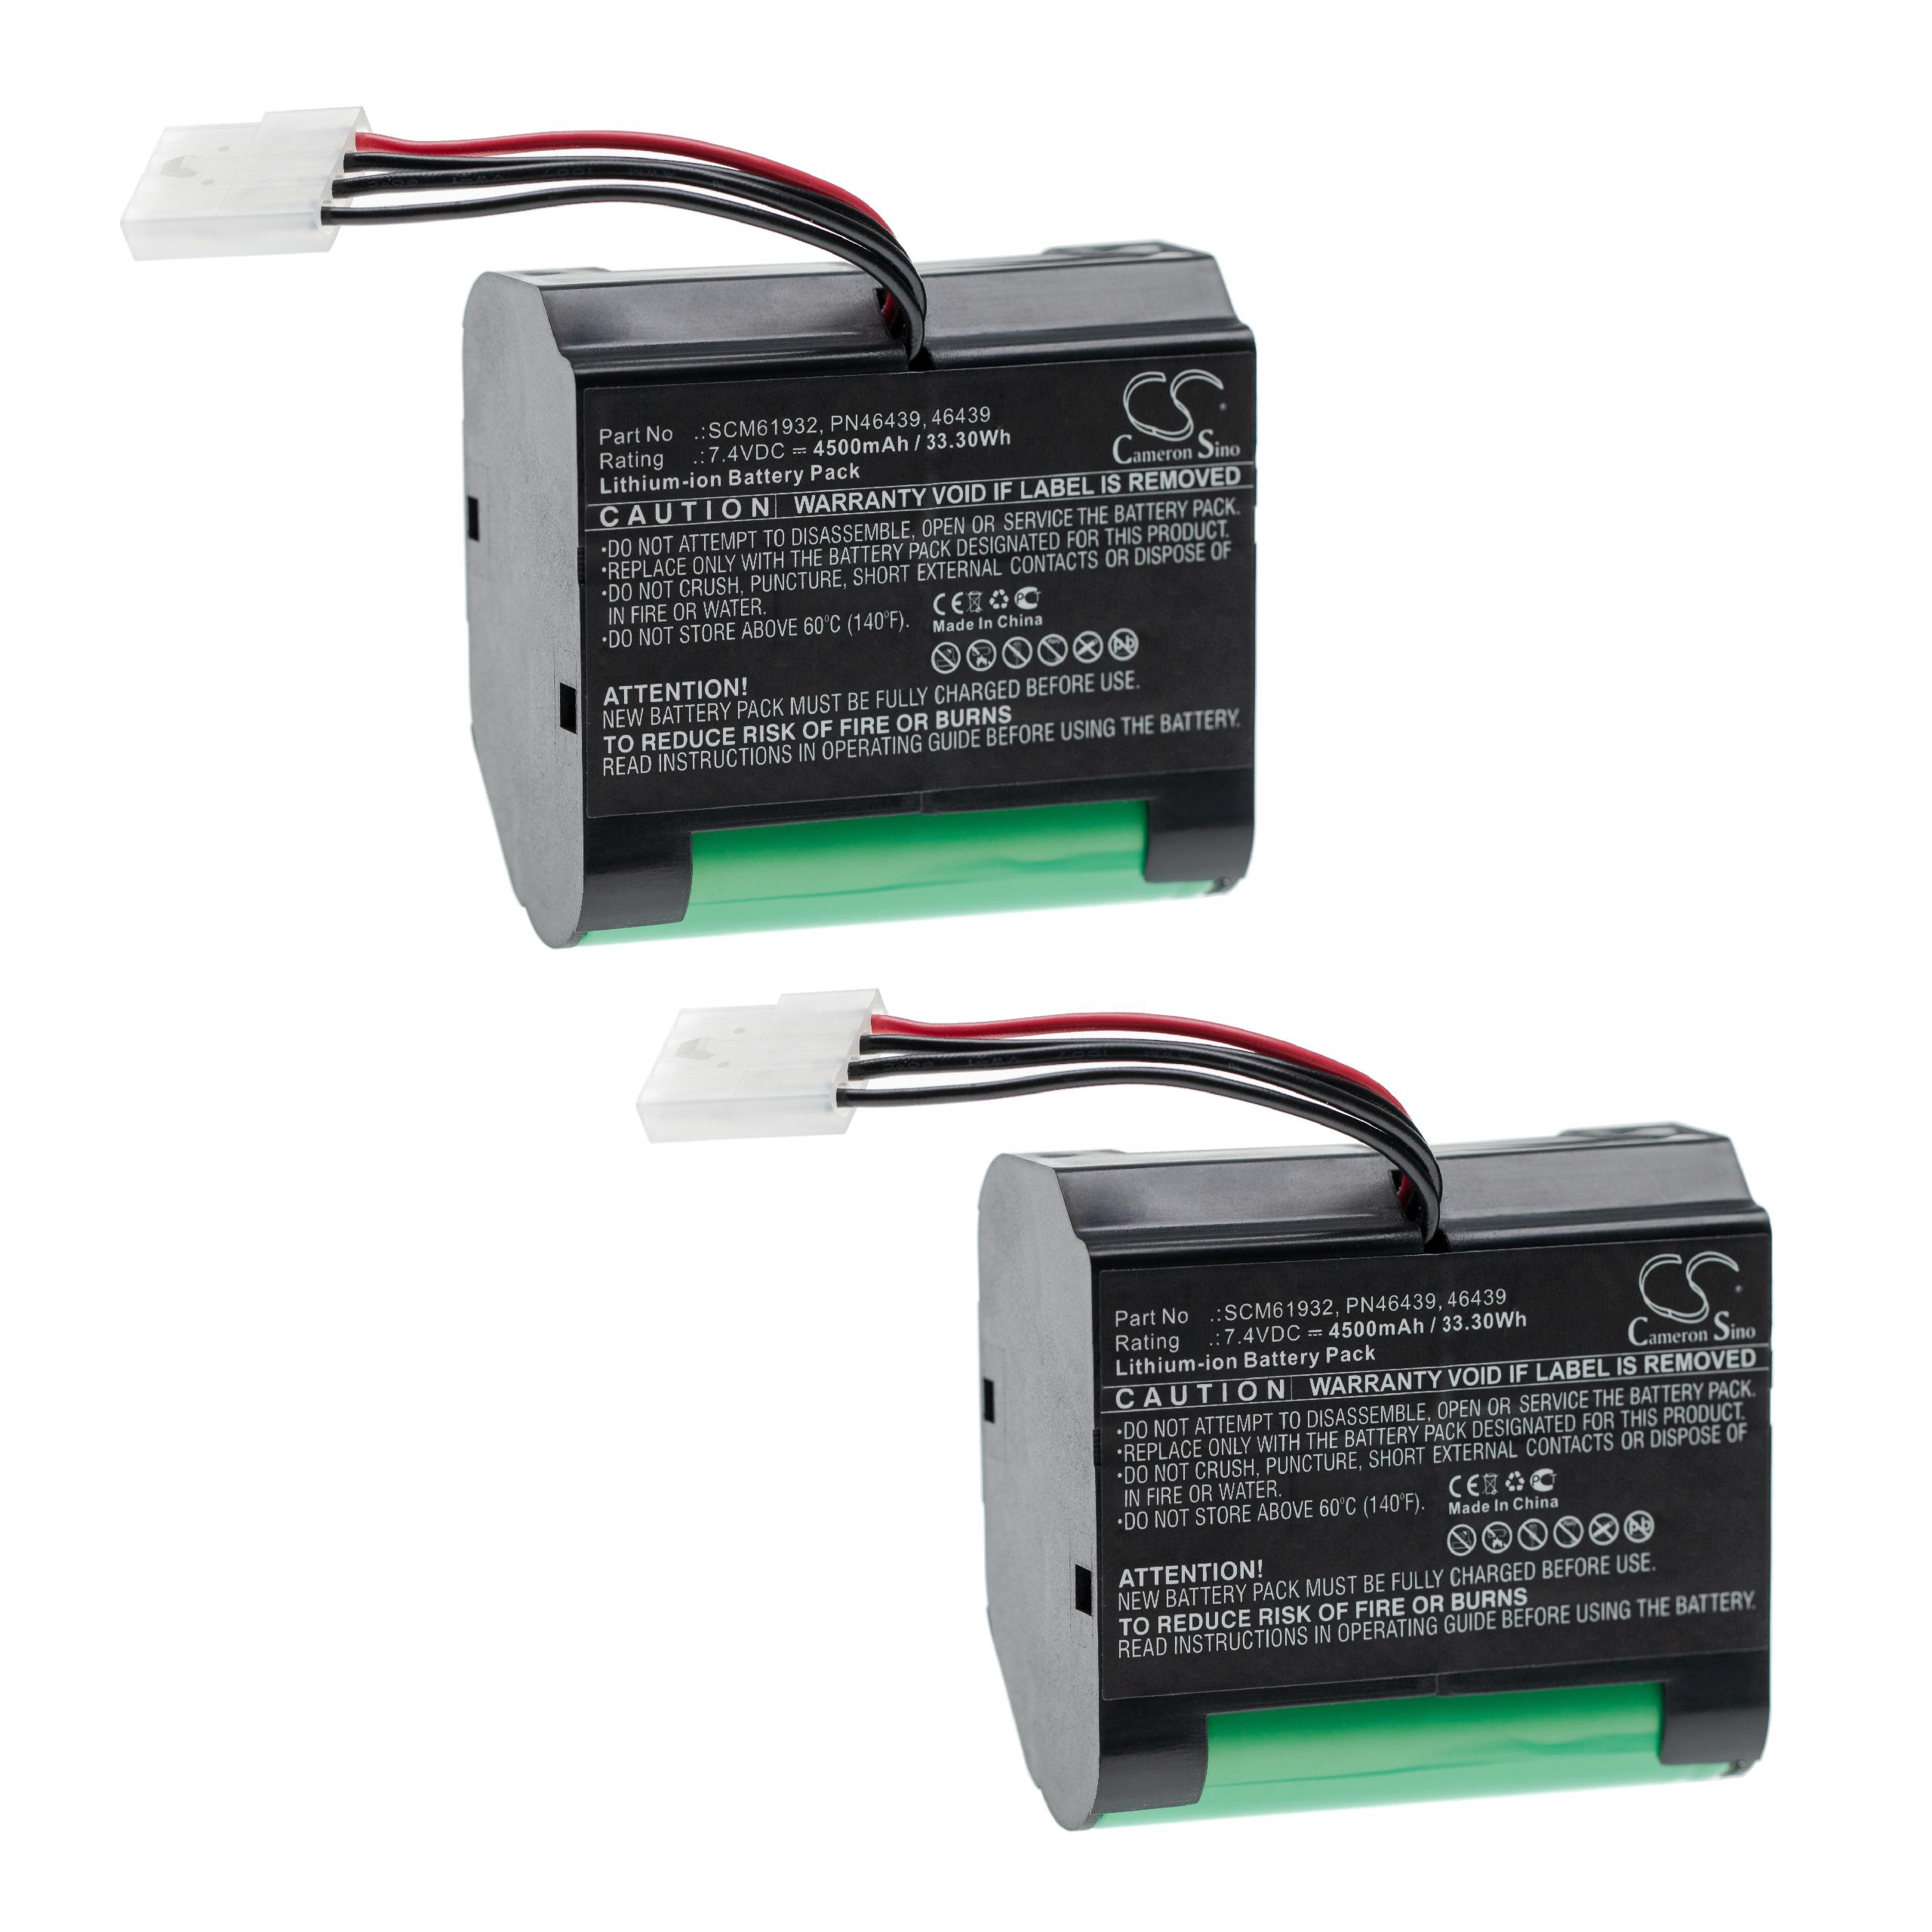 Battery (2 Units) Replacement for Vorwerk SCM61932, PN46439, 46439 for - 4500mAh, 7.4V, Li-Ion